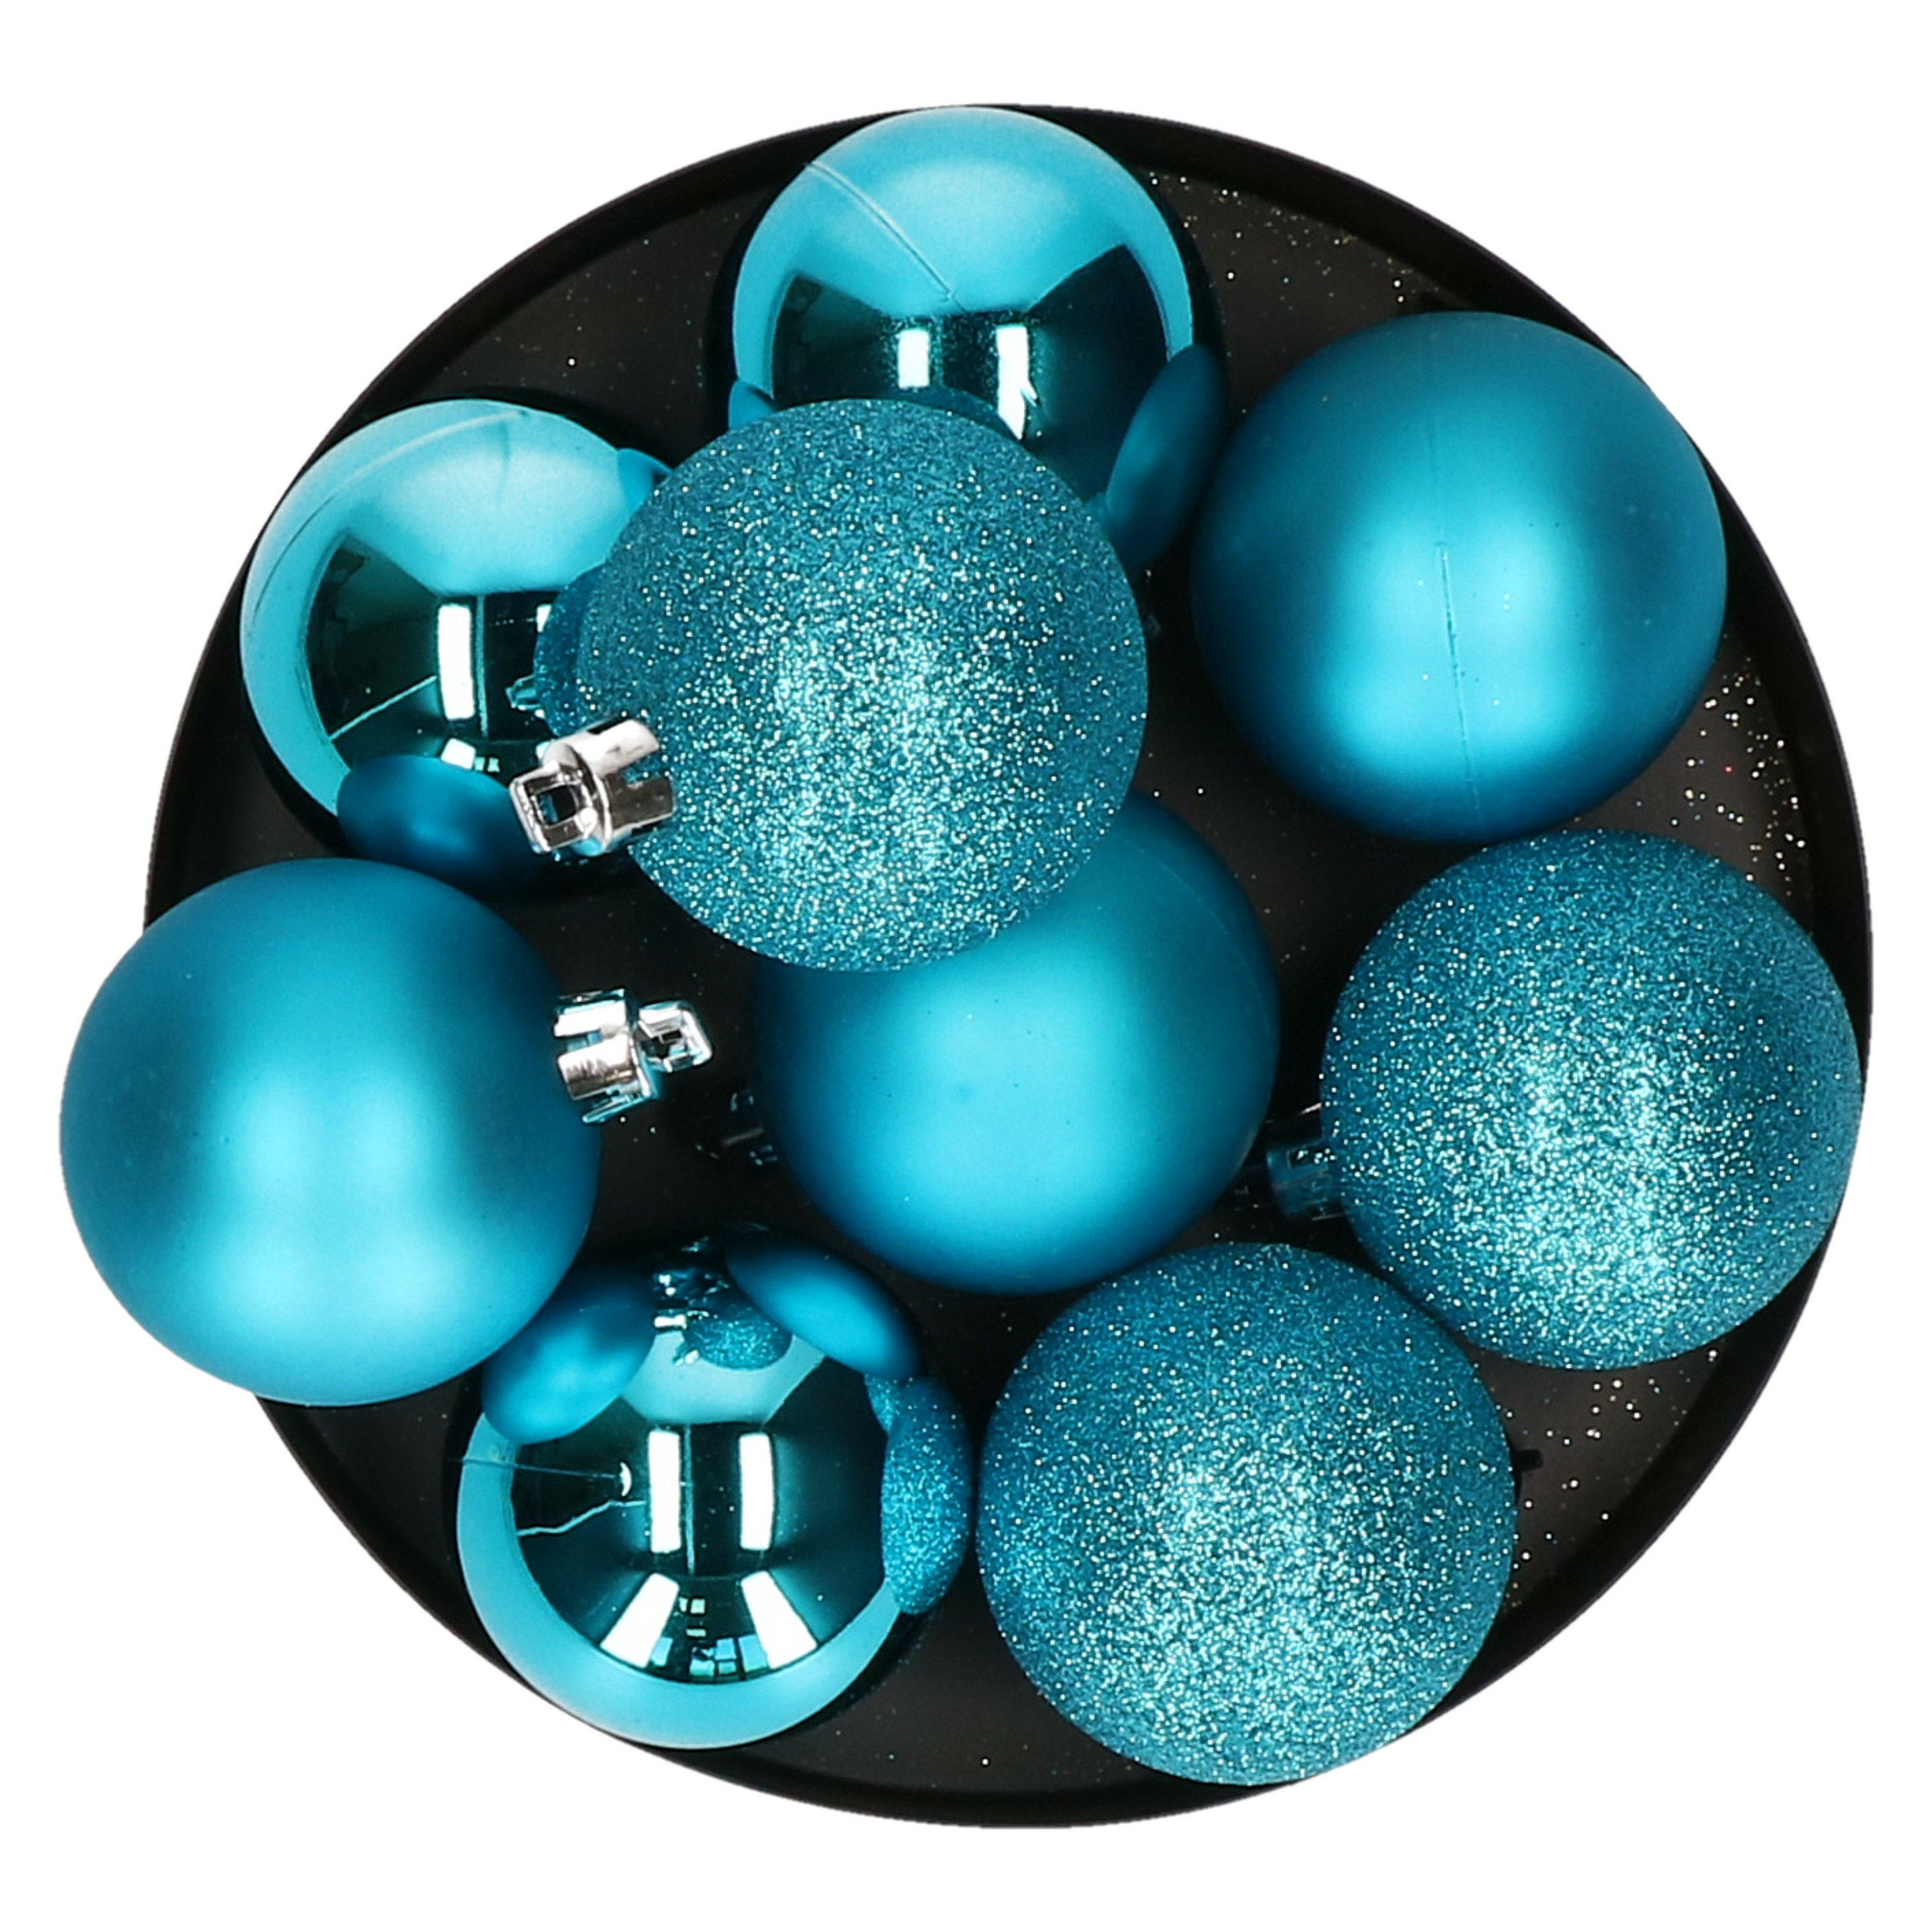 9x stuks kerstballen turquoise blauw glans en mat kunststof 6 cm